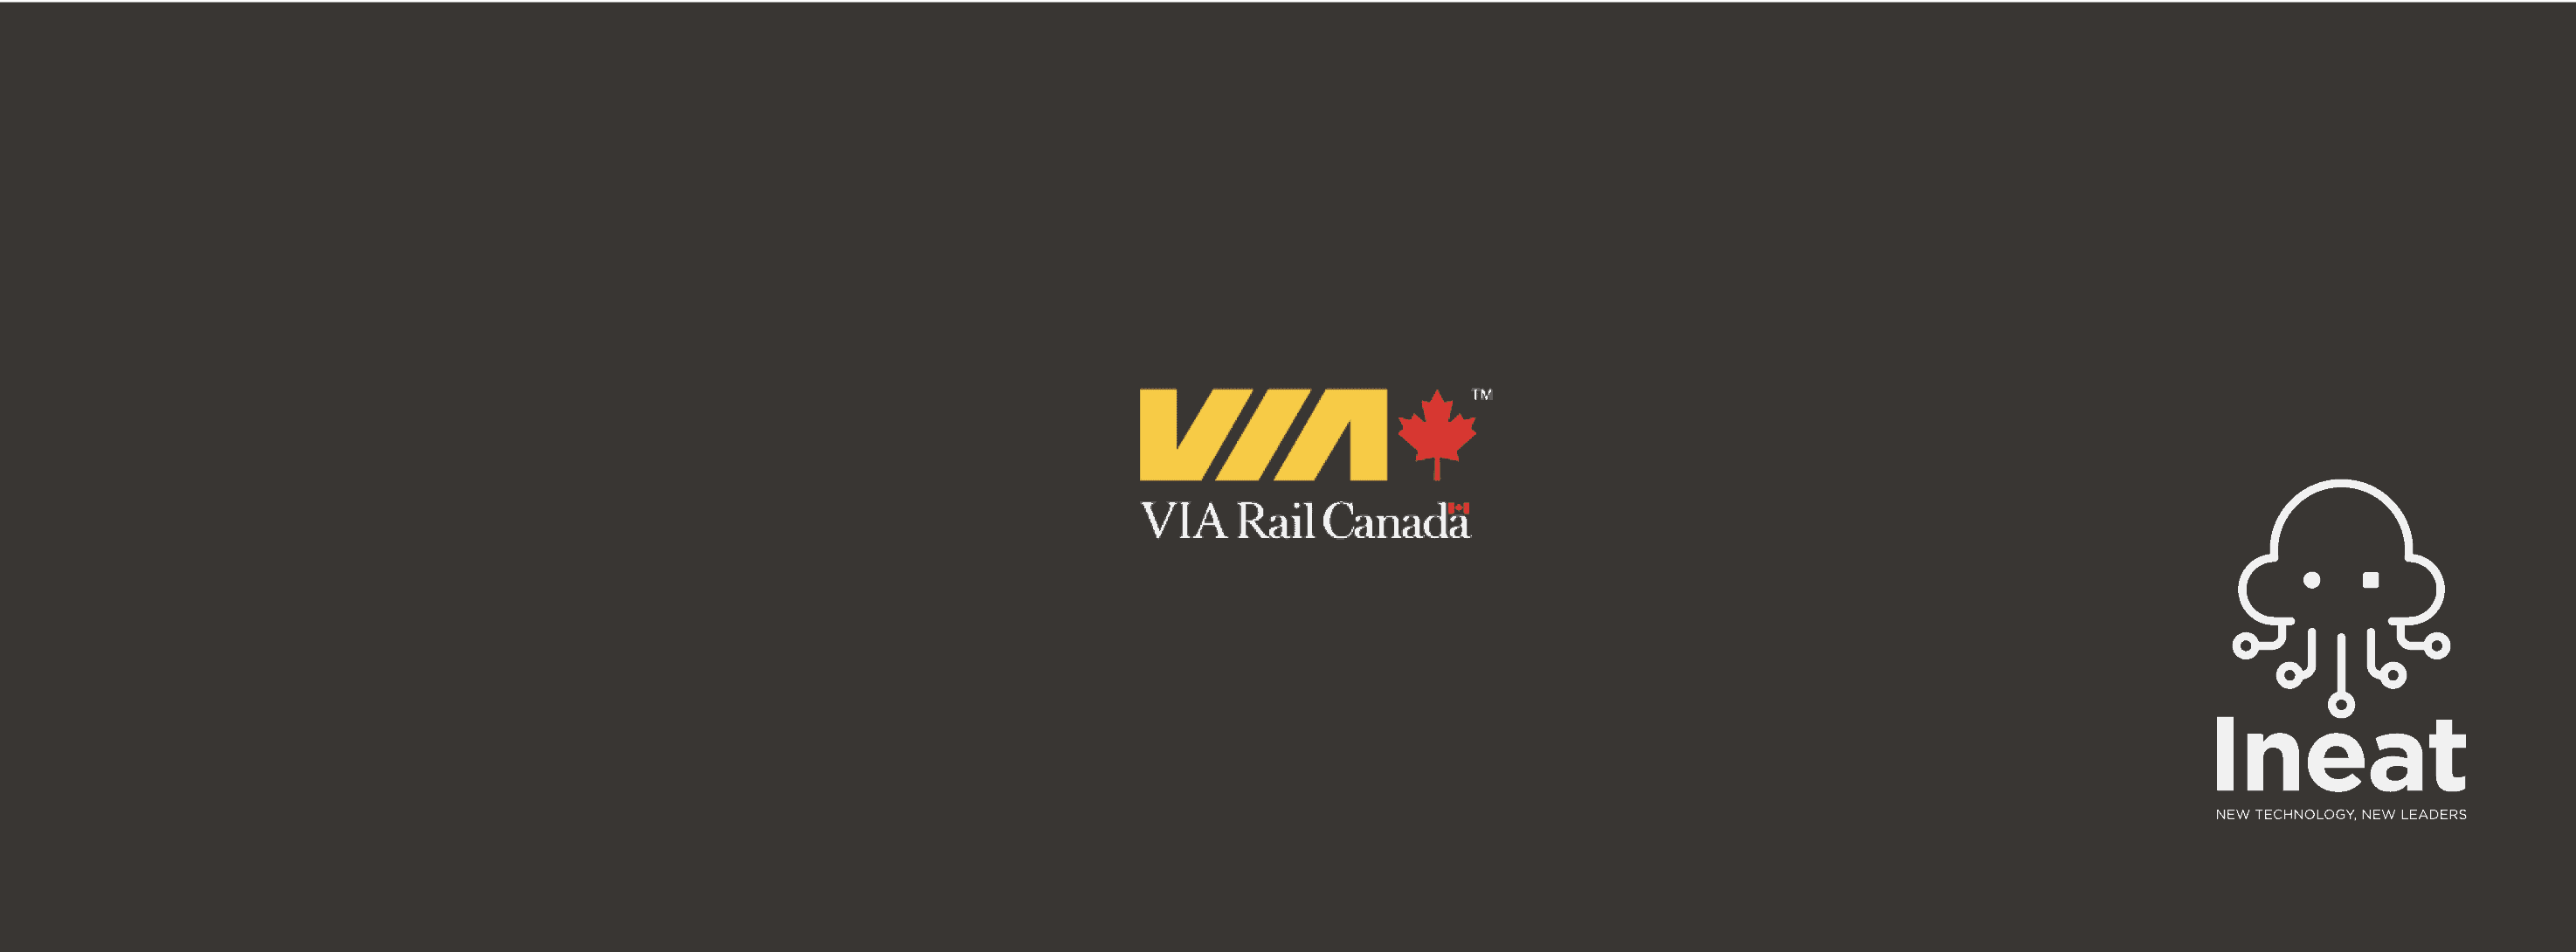 Logo Via Rail Canada référence Ineat